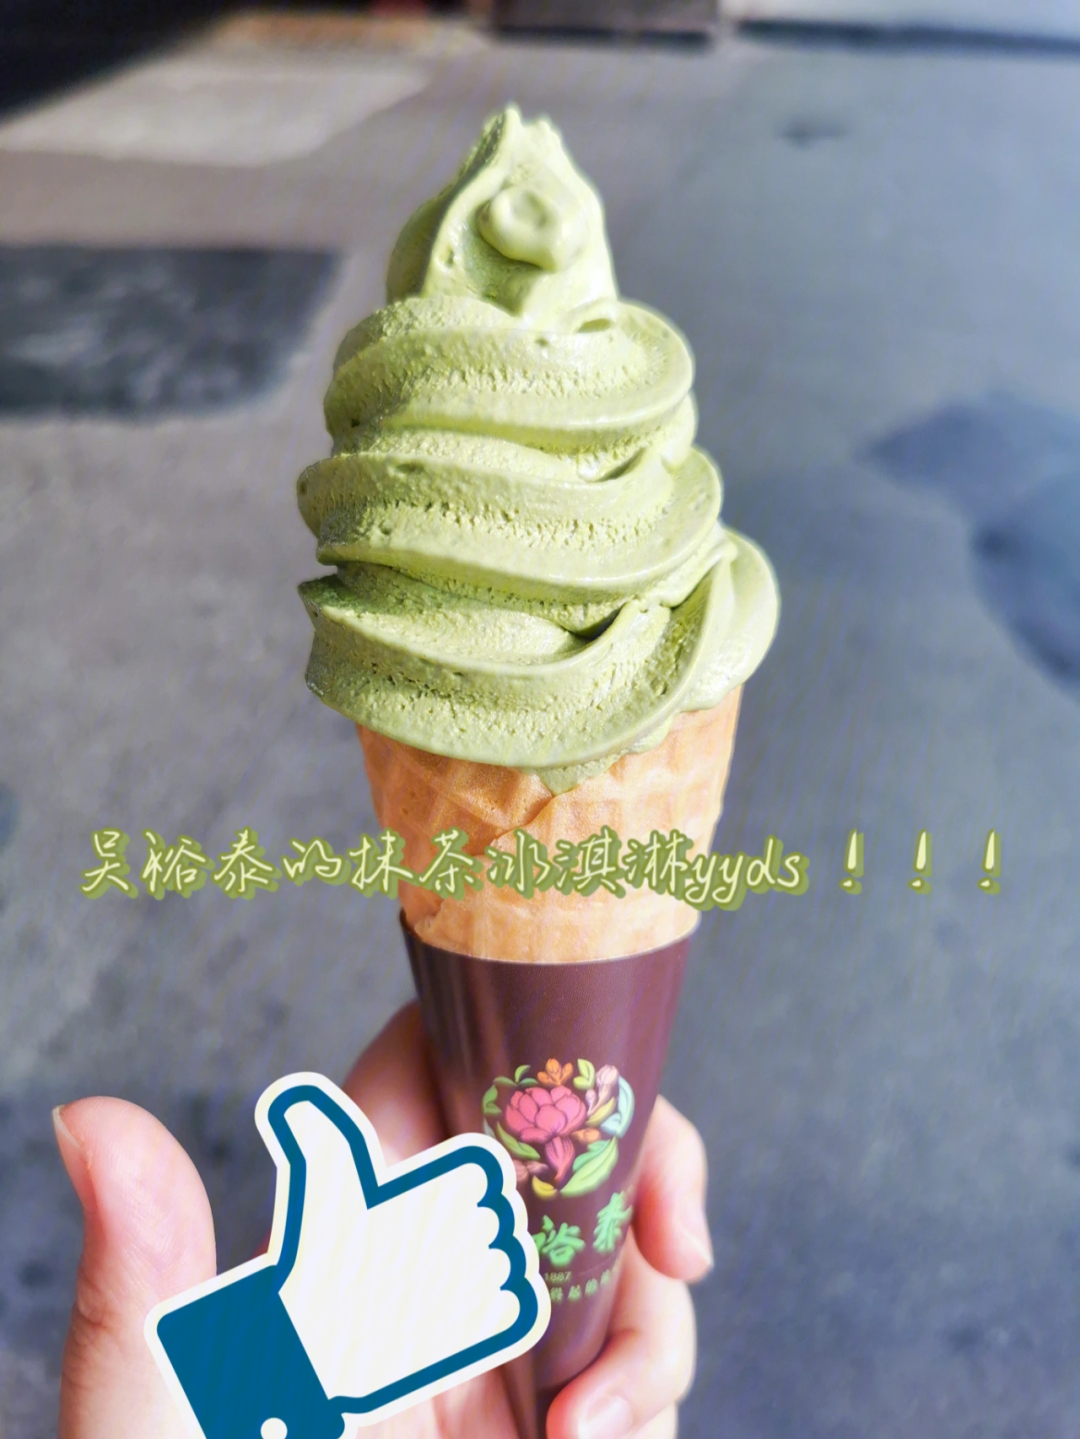 吴裕泰抹茶冰淇淋图片